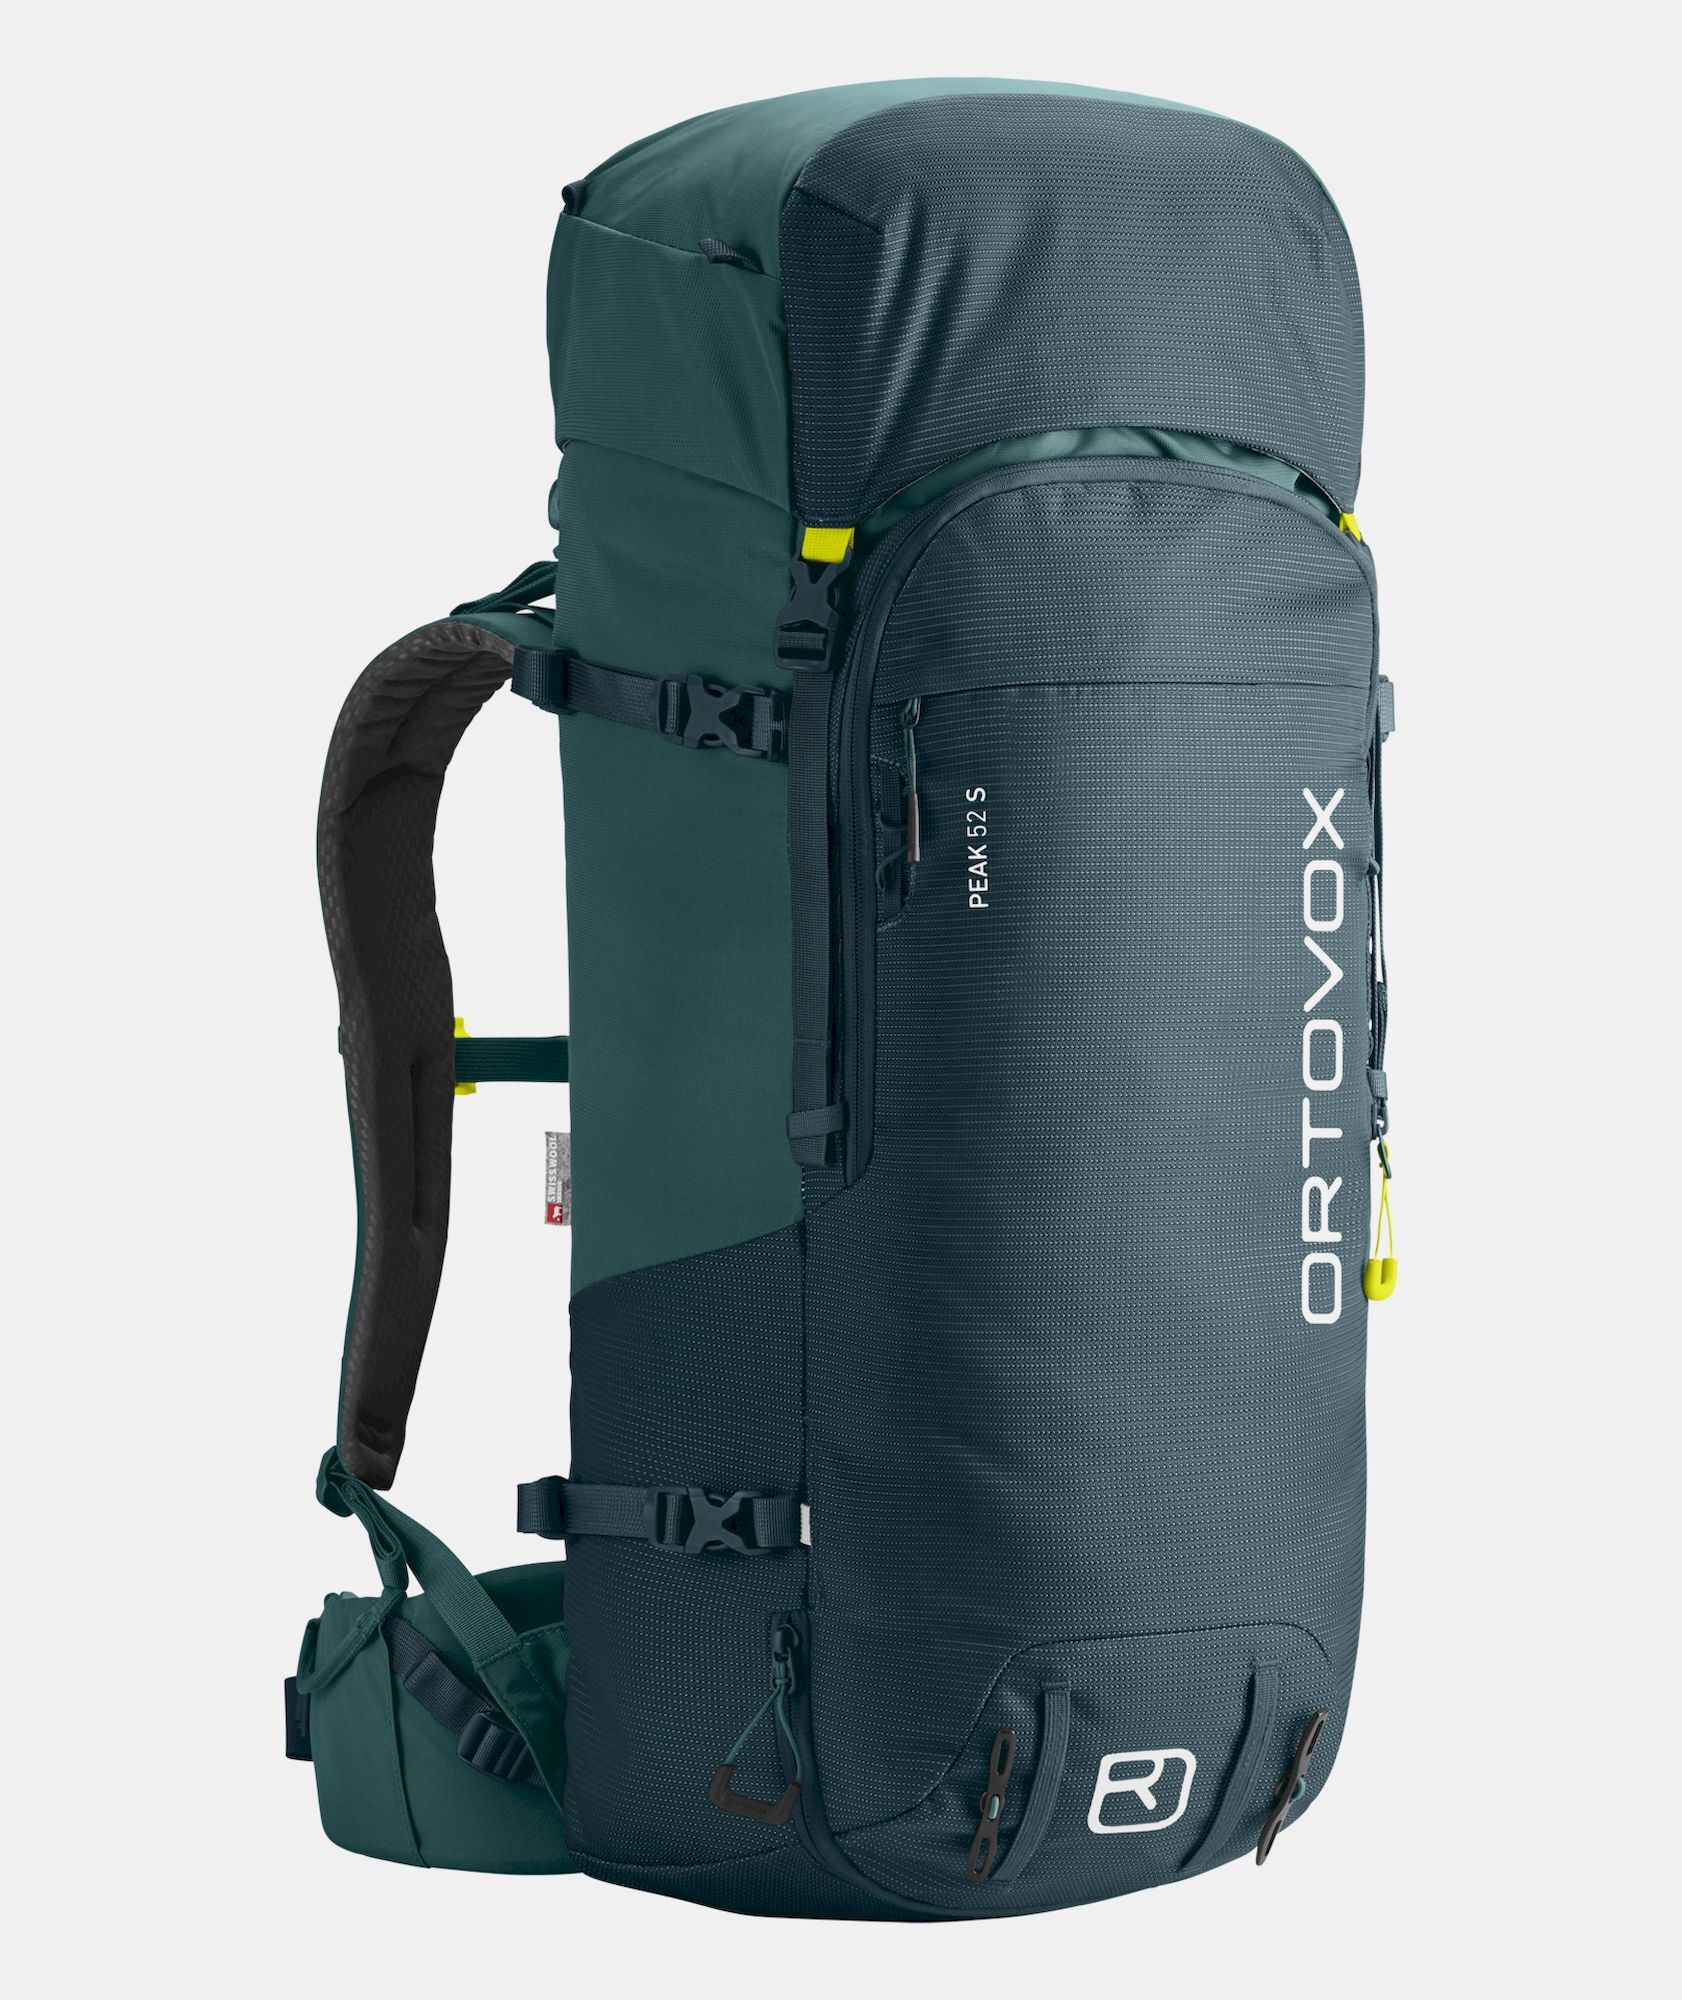 Ortovox Peak 52 S - Dámsky batoh pro zimní sporty | Hardloop